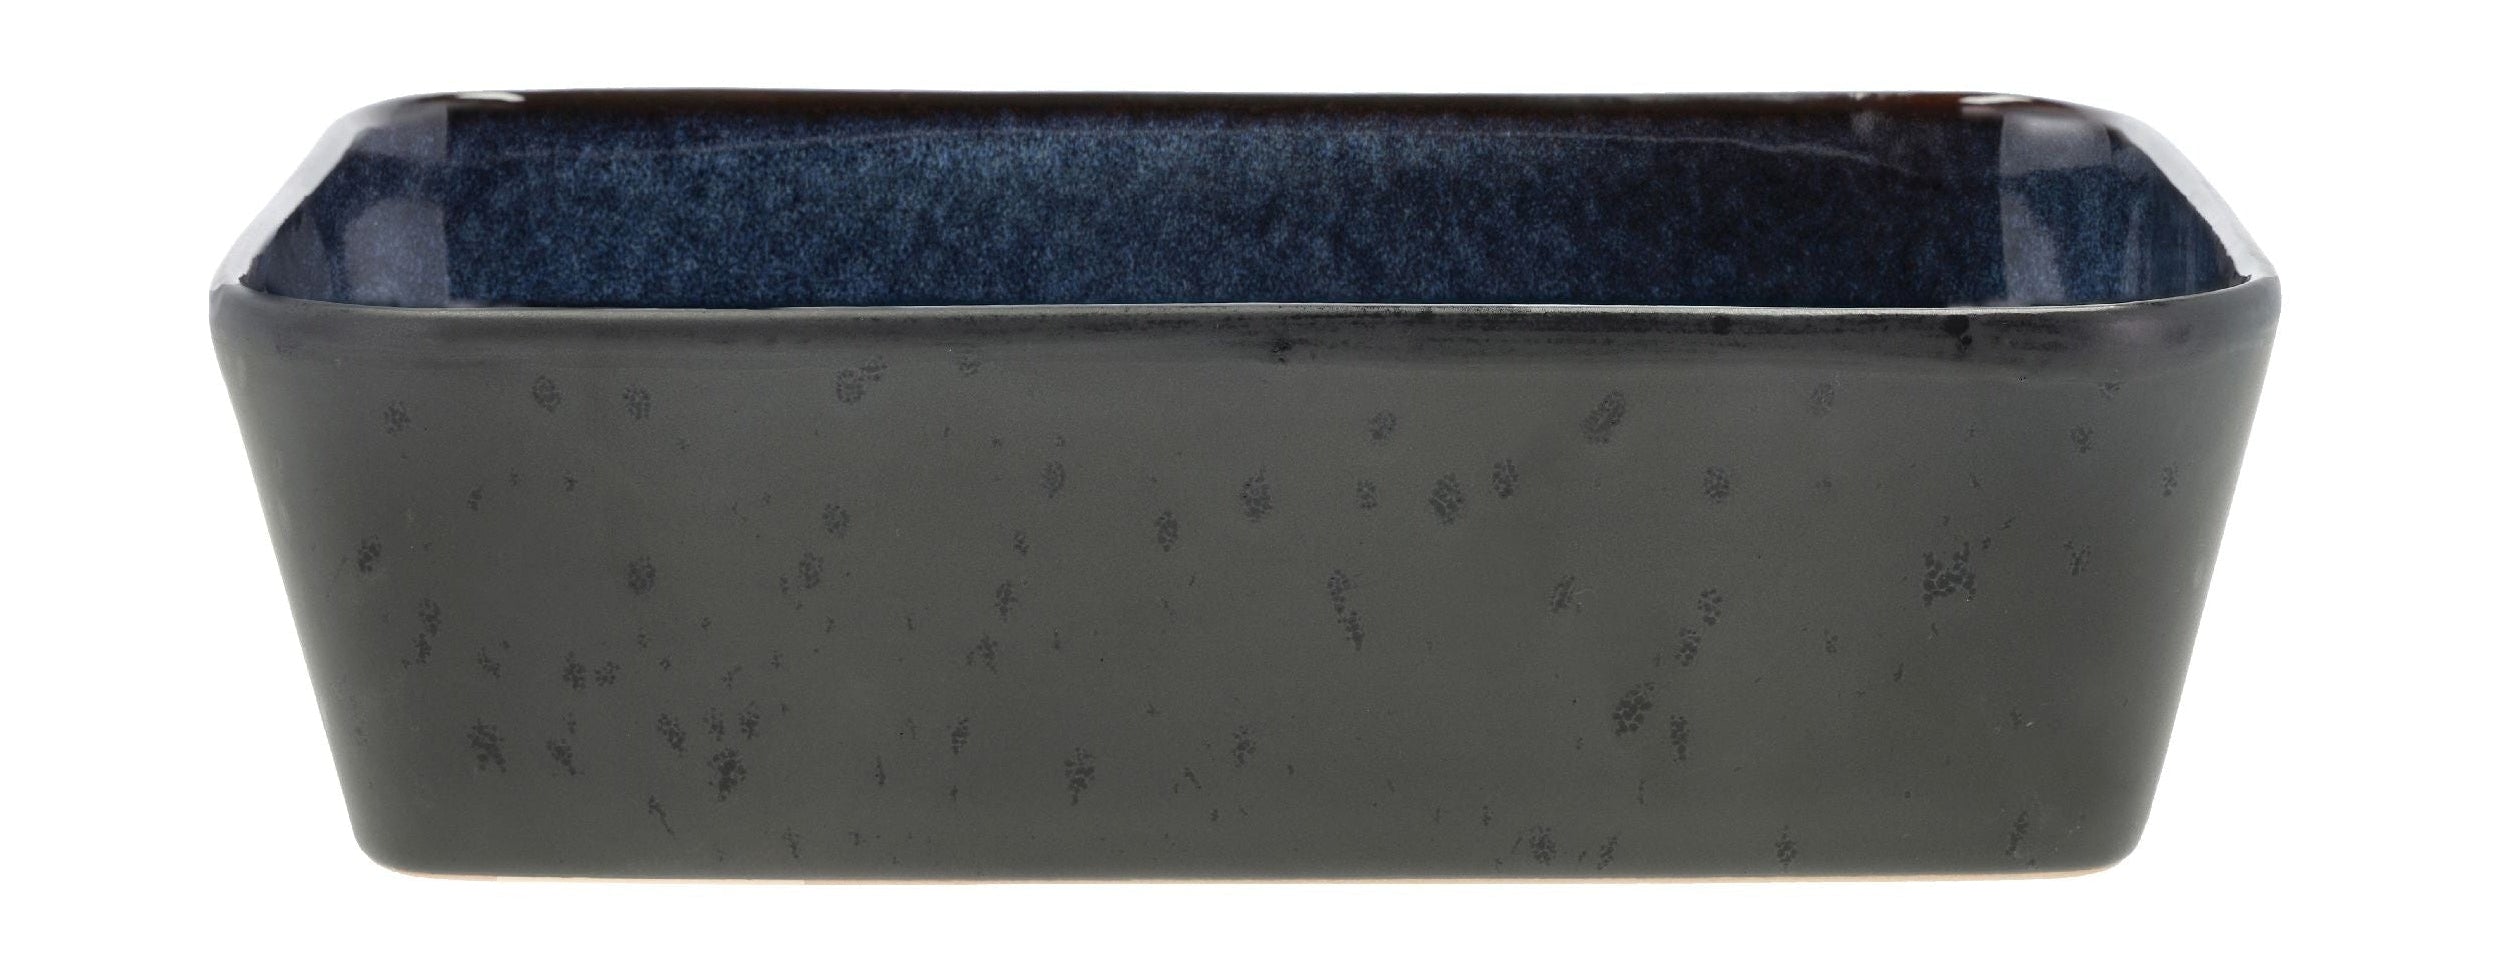 Bitz Schale rechteckig 28 x 21 x 8 cm, schwarz/blau